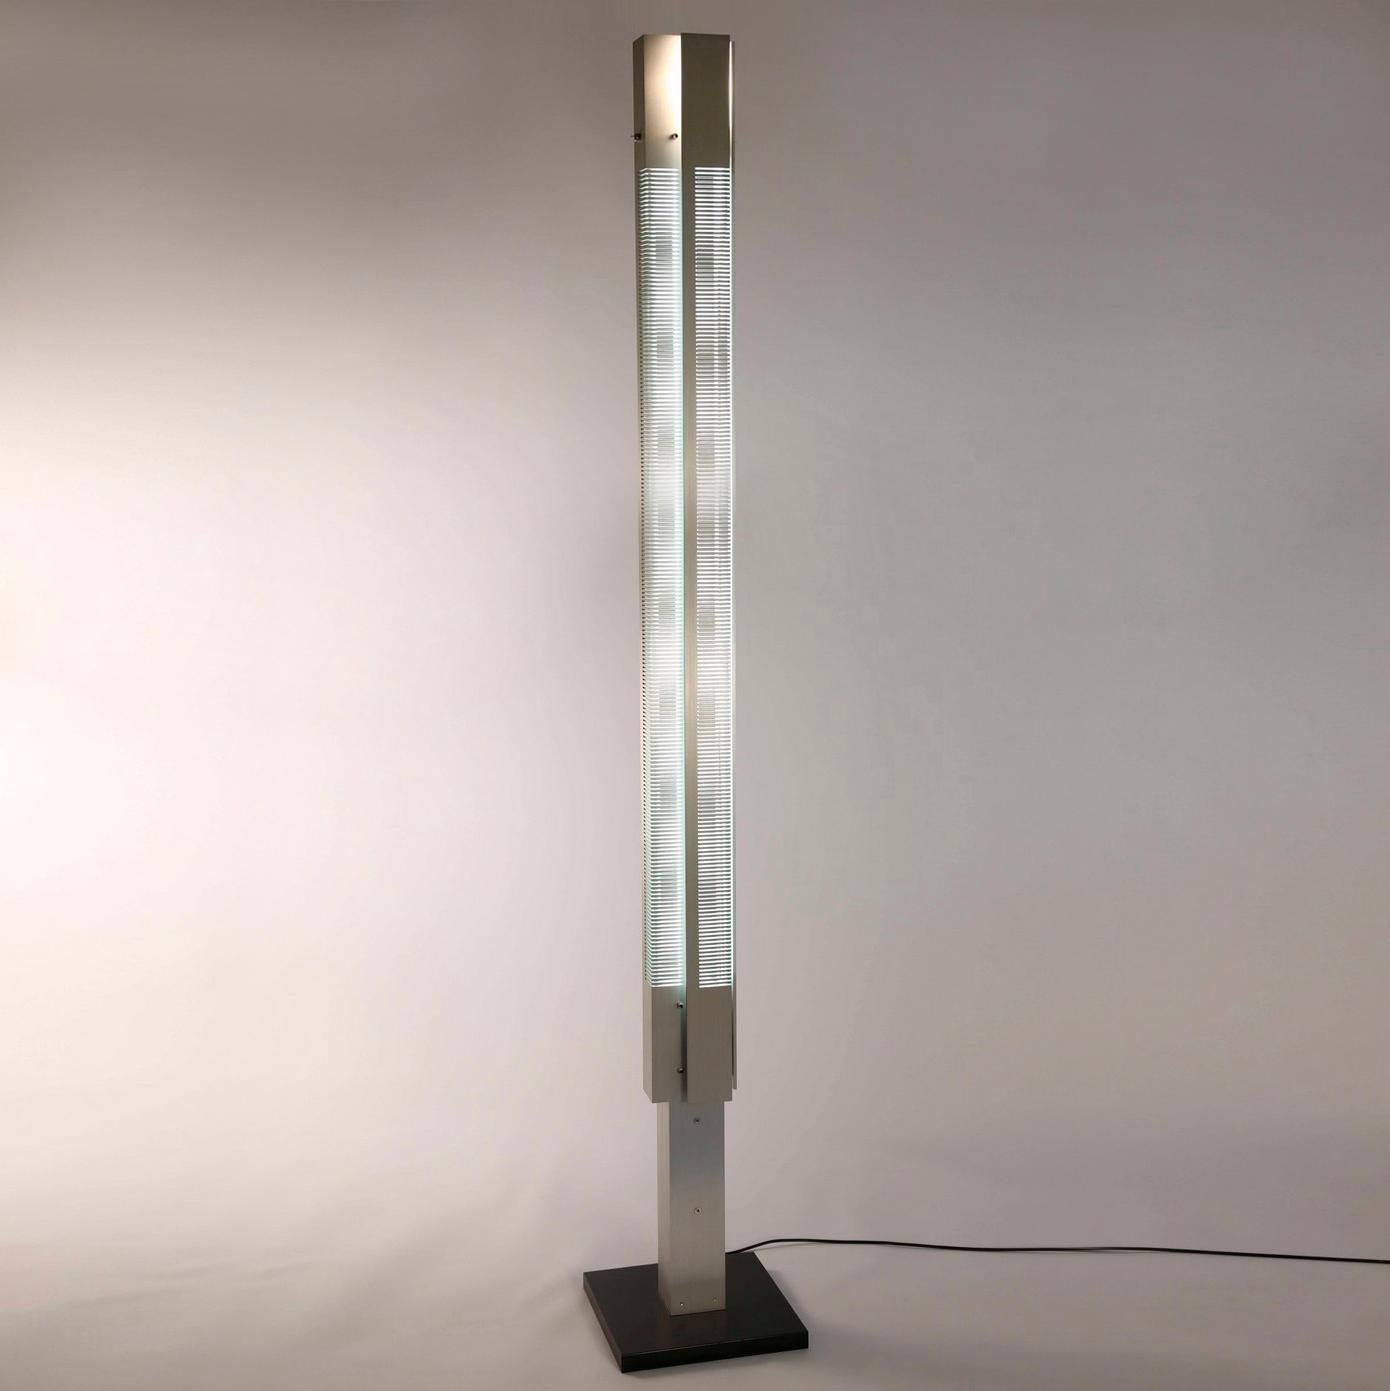 Stehleuchte Modell 'Large Signal Column Lamp', entworfen von Serge Mouille im Jahr 1962.

Hergestellt von Collection Serge Mouille in Frankreich. Die Herstellung der Lampen, Wandleuchten und Stehlampen erfolgt in handwerklicher Weise mit den